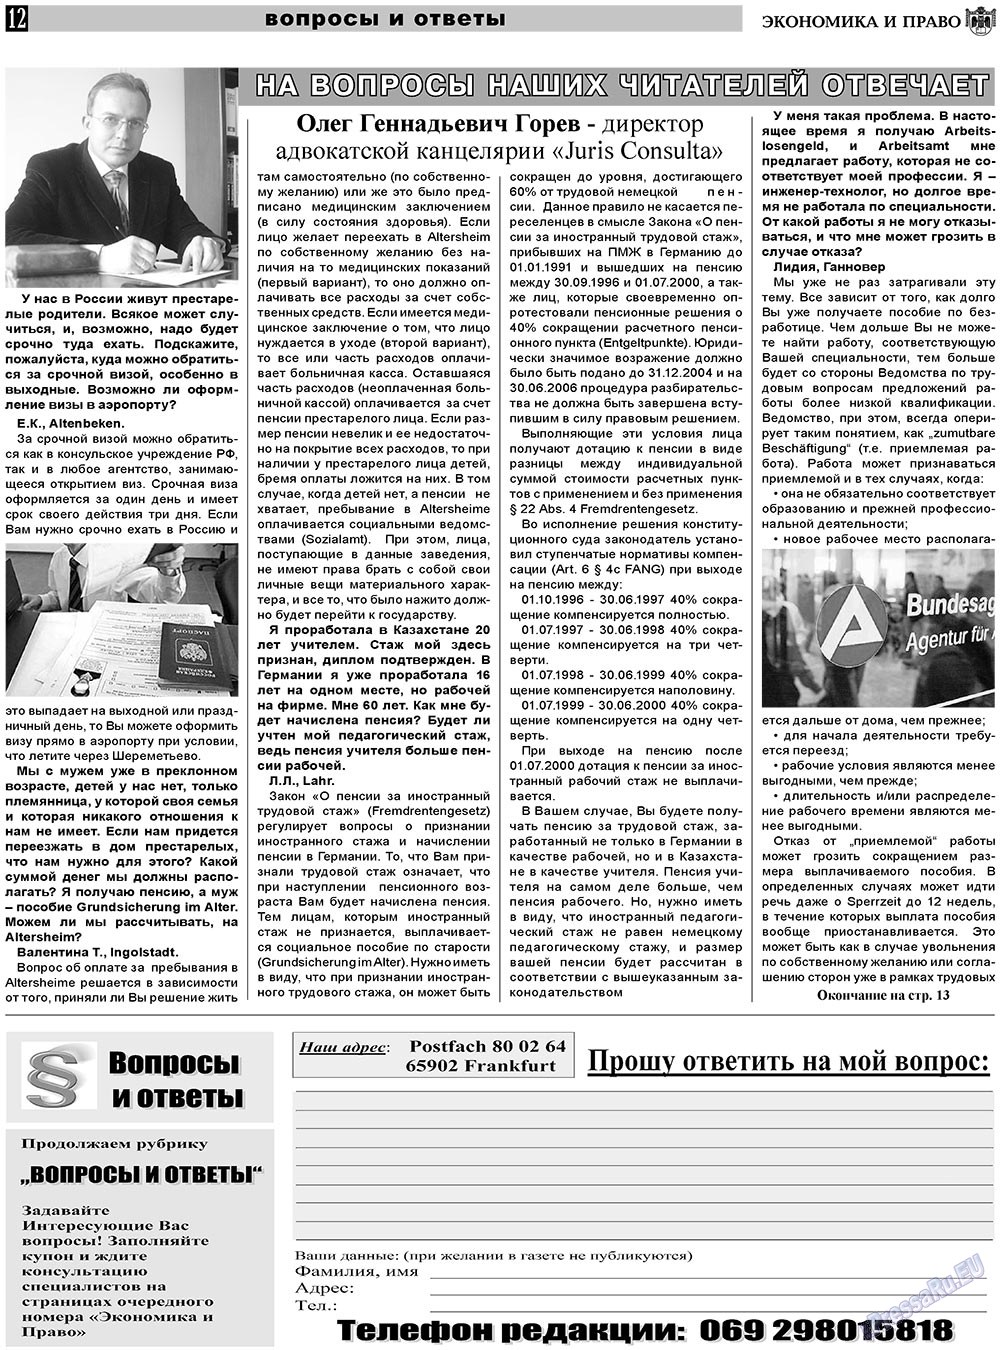 Экономика и право, газета. 2010 №12 стр.12